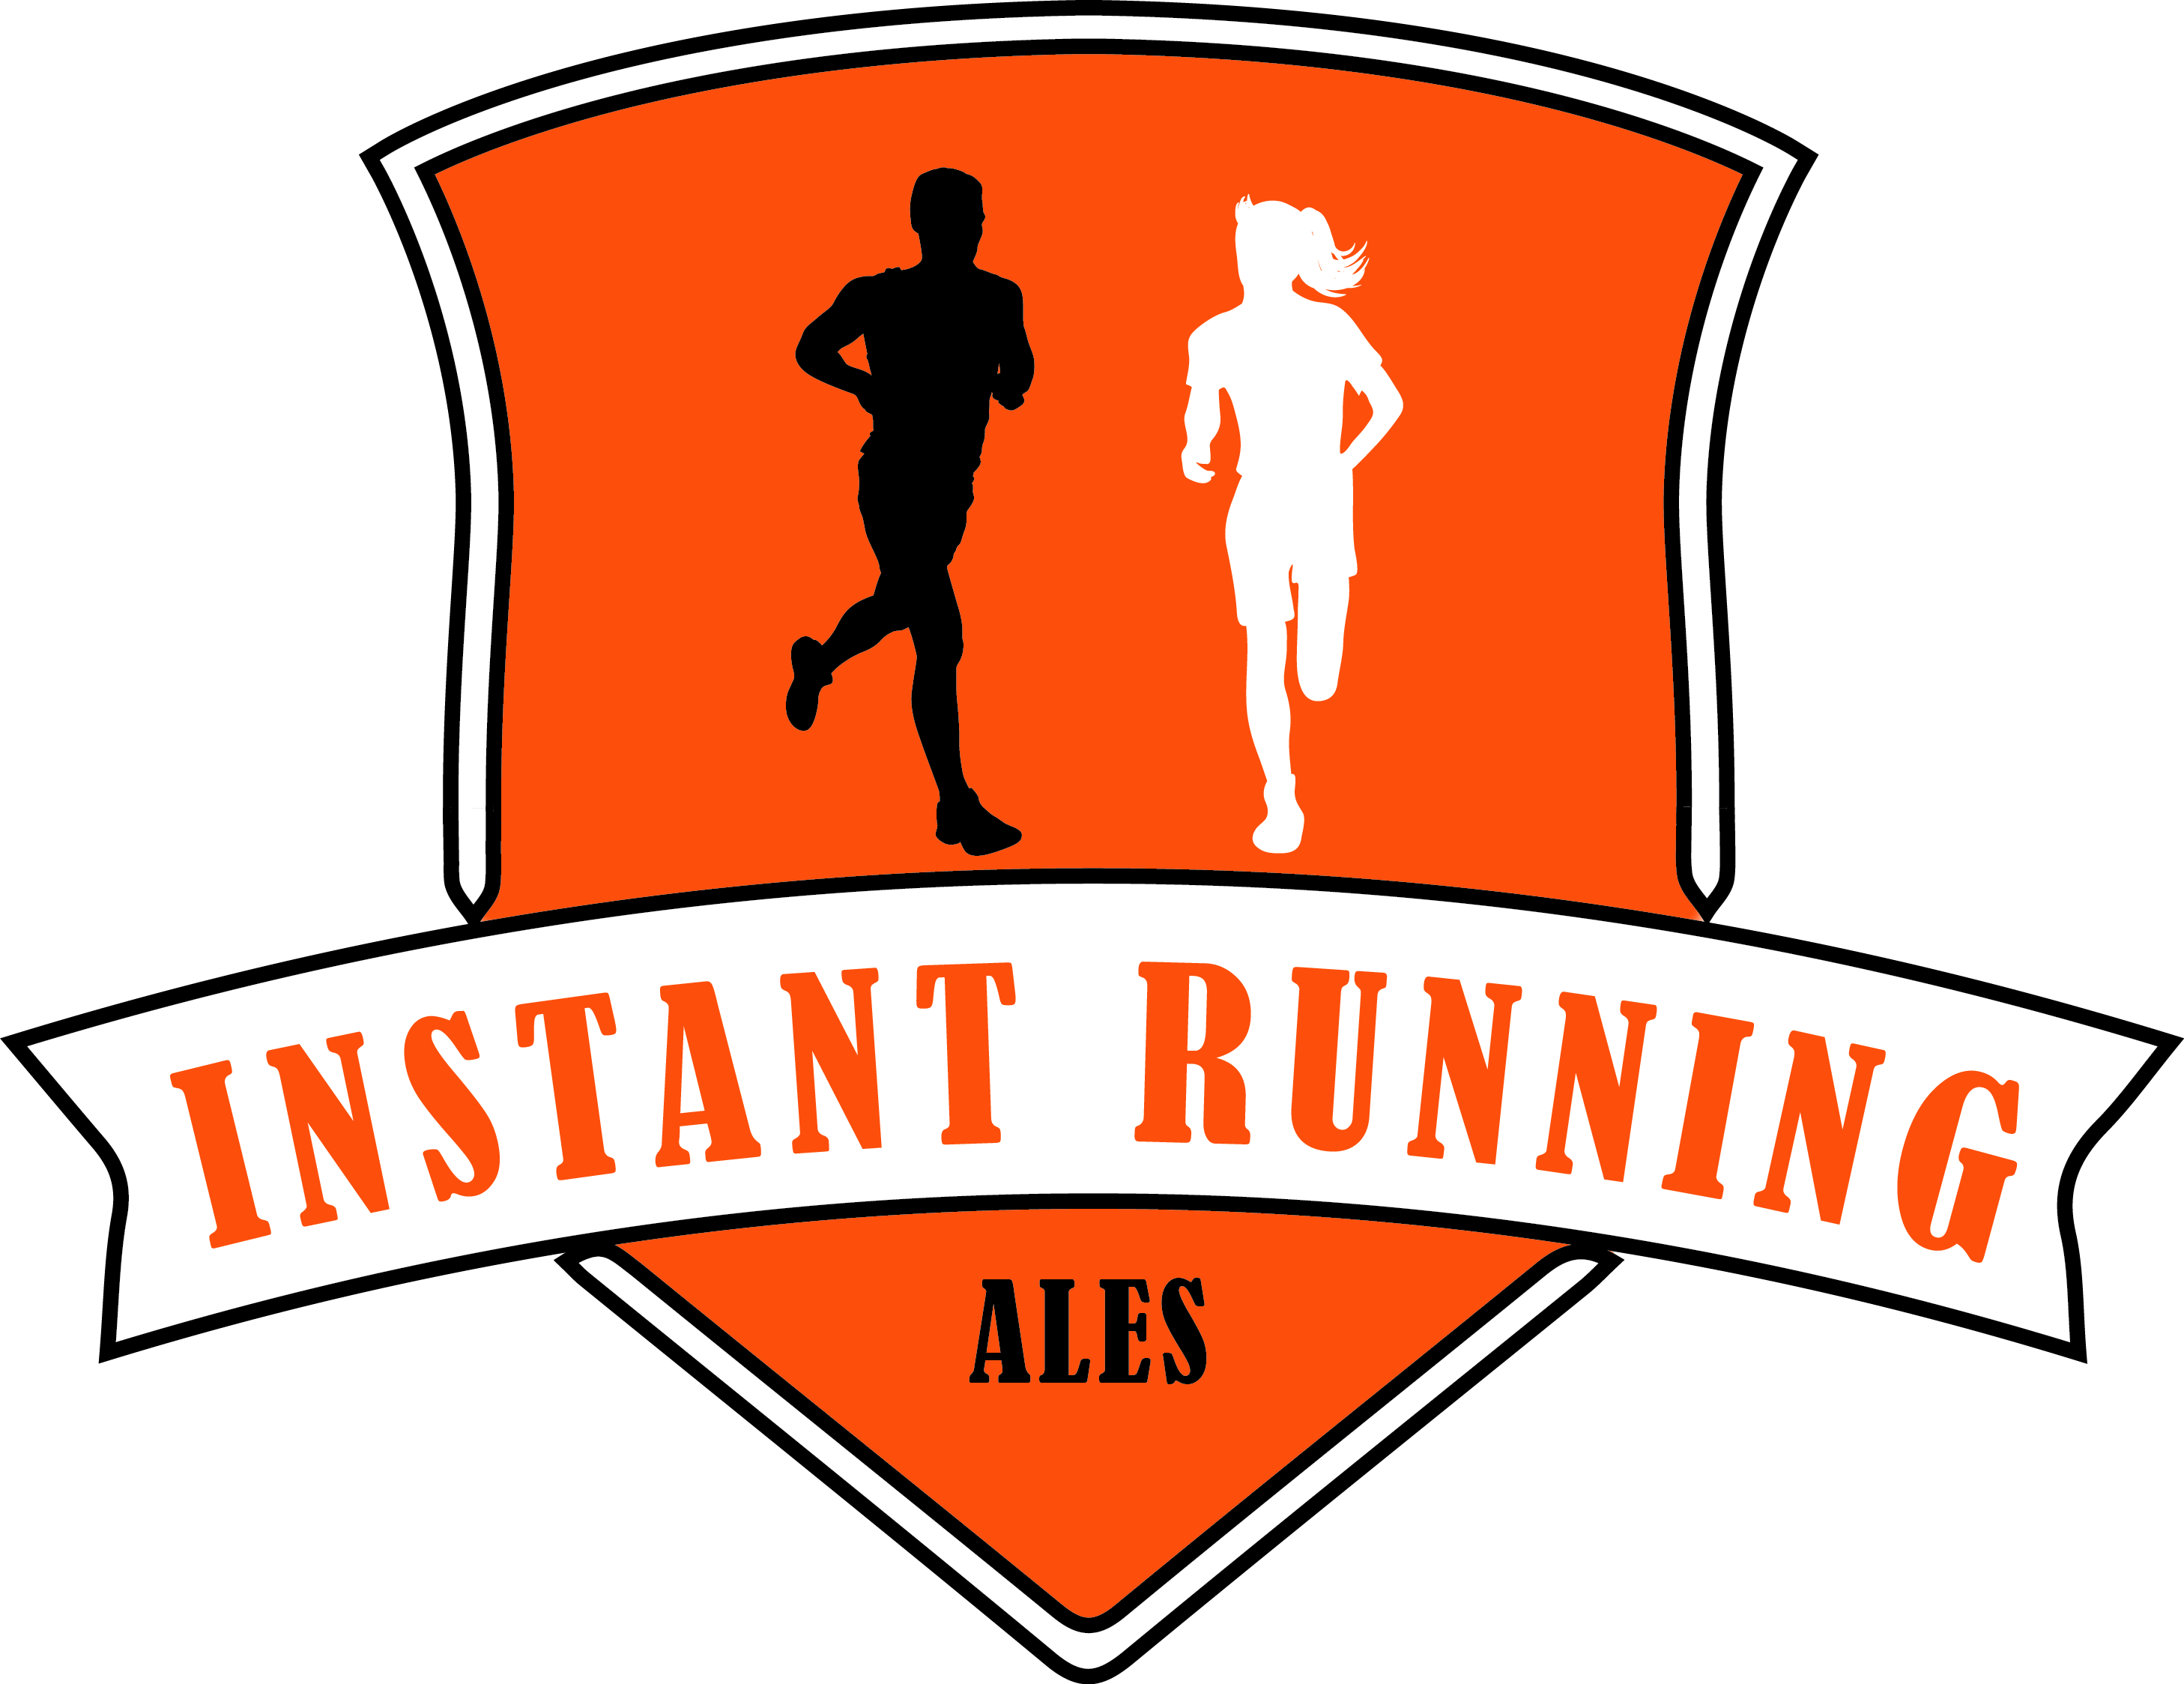 Logo Instant Running Alès, magasin spécialisé dans la vente d'articles de running